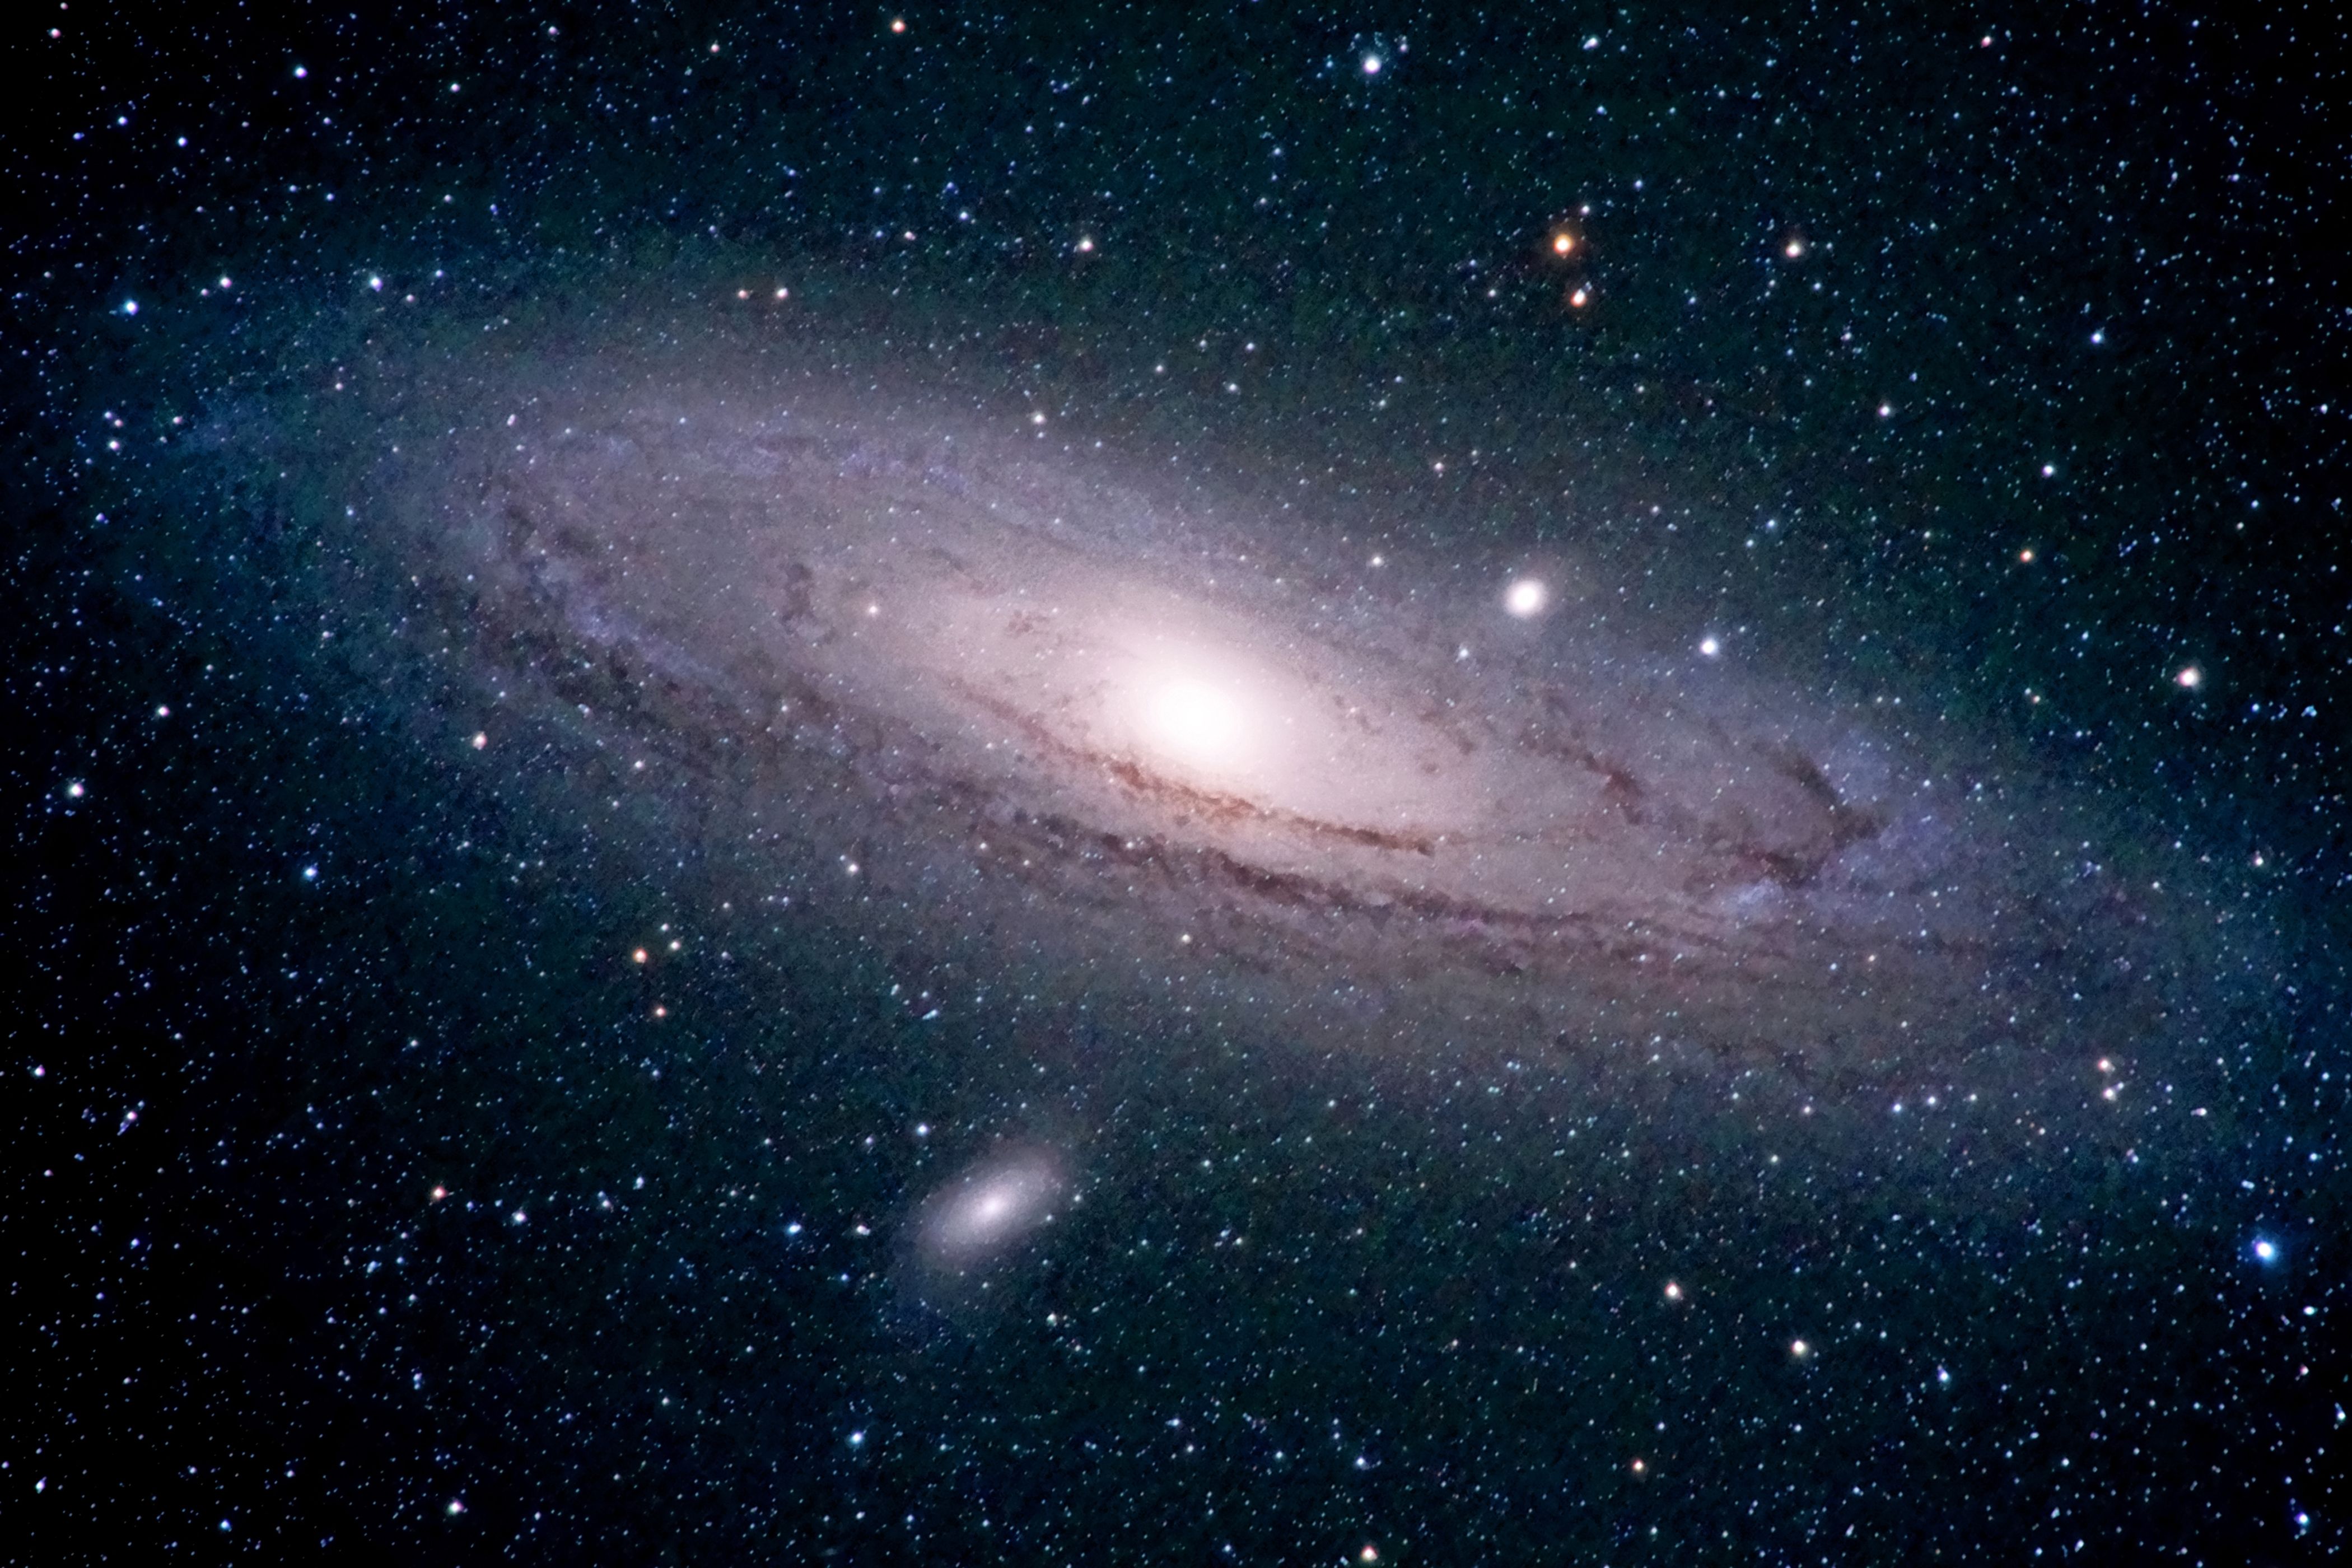 andromeda-galaxy-royalty-free-image-1585682435.jpg